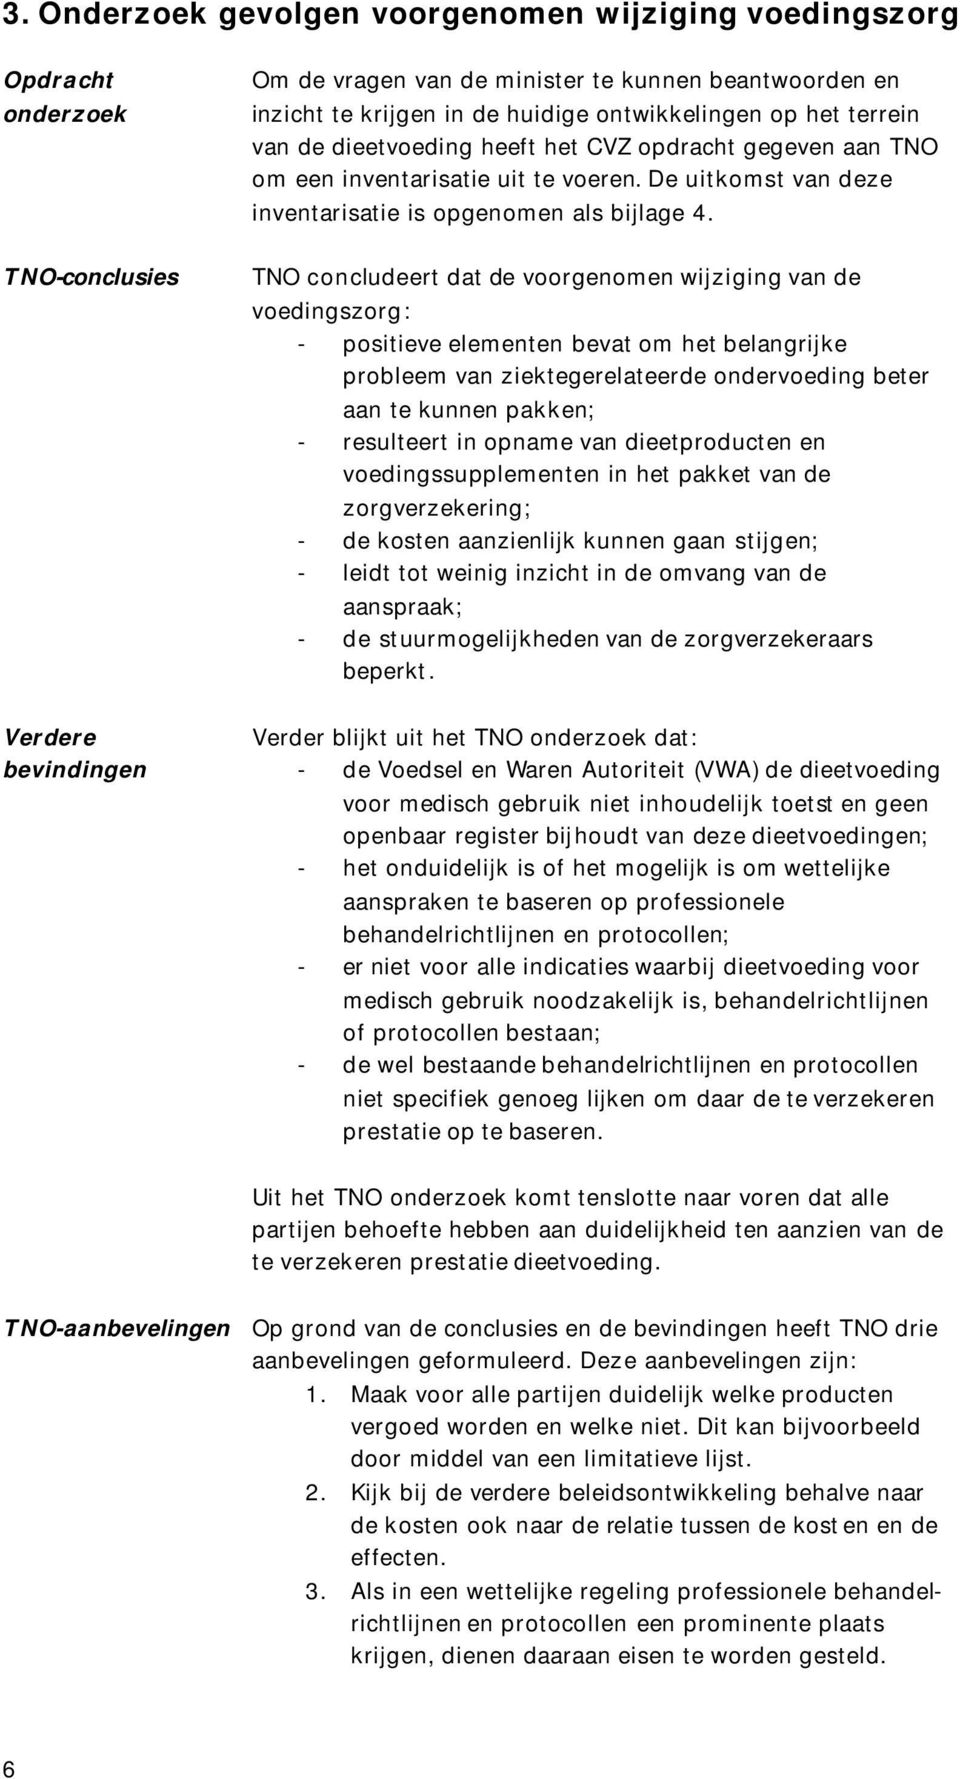 TNO-conclusies TNO concludeert dat de voorgenomen wijziging van de voedingszorg: - positieve elementen bevat om het belangrijke probleem van ziektegerelateerde ondervoeding beter aan te kunnen